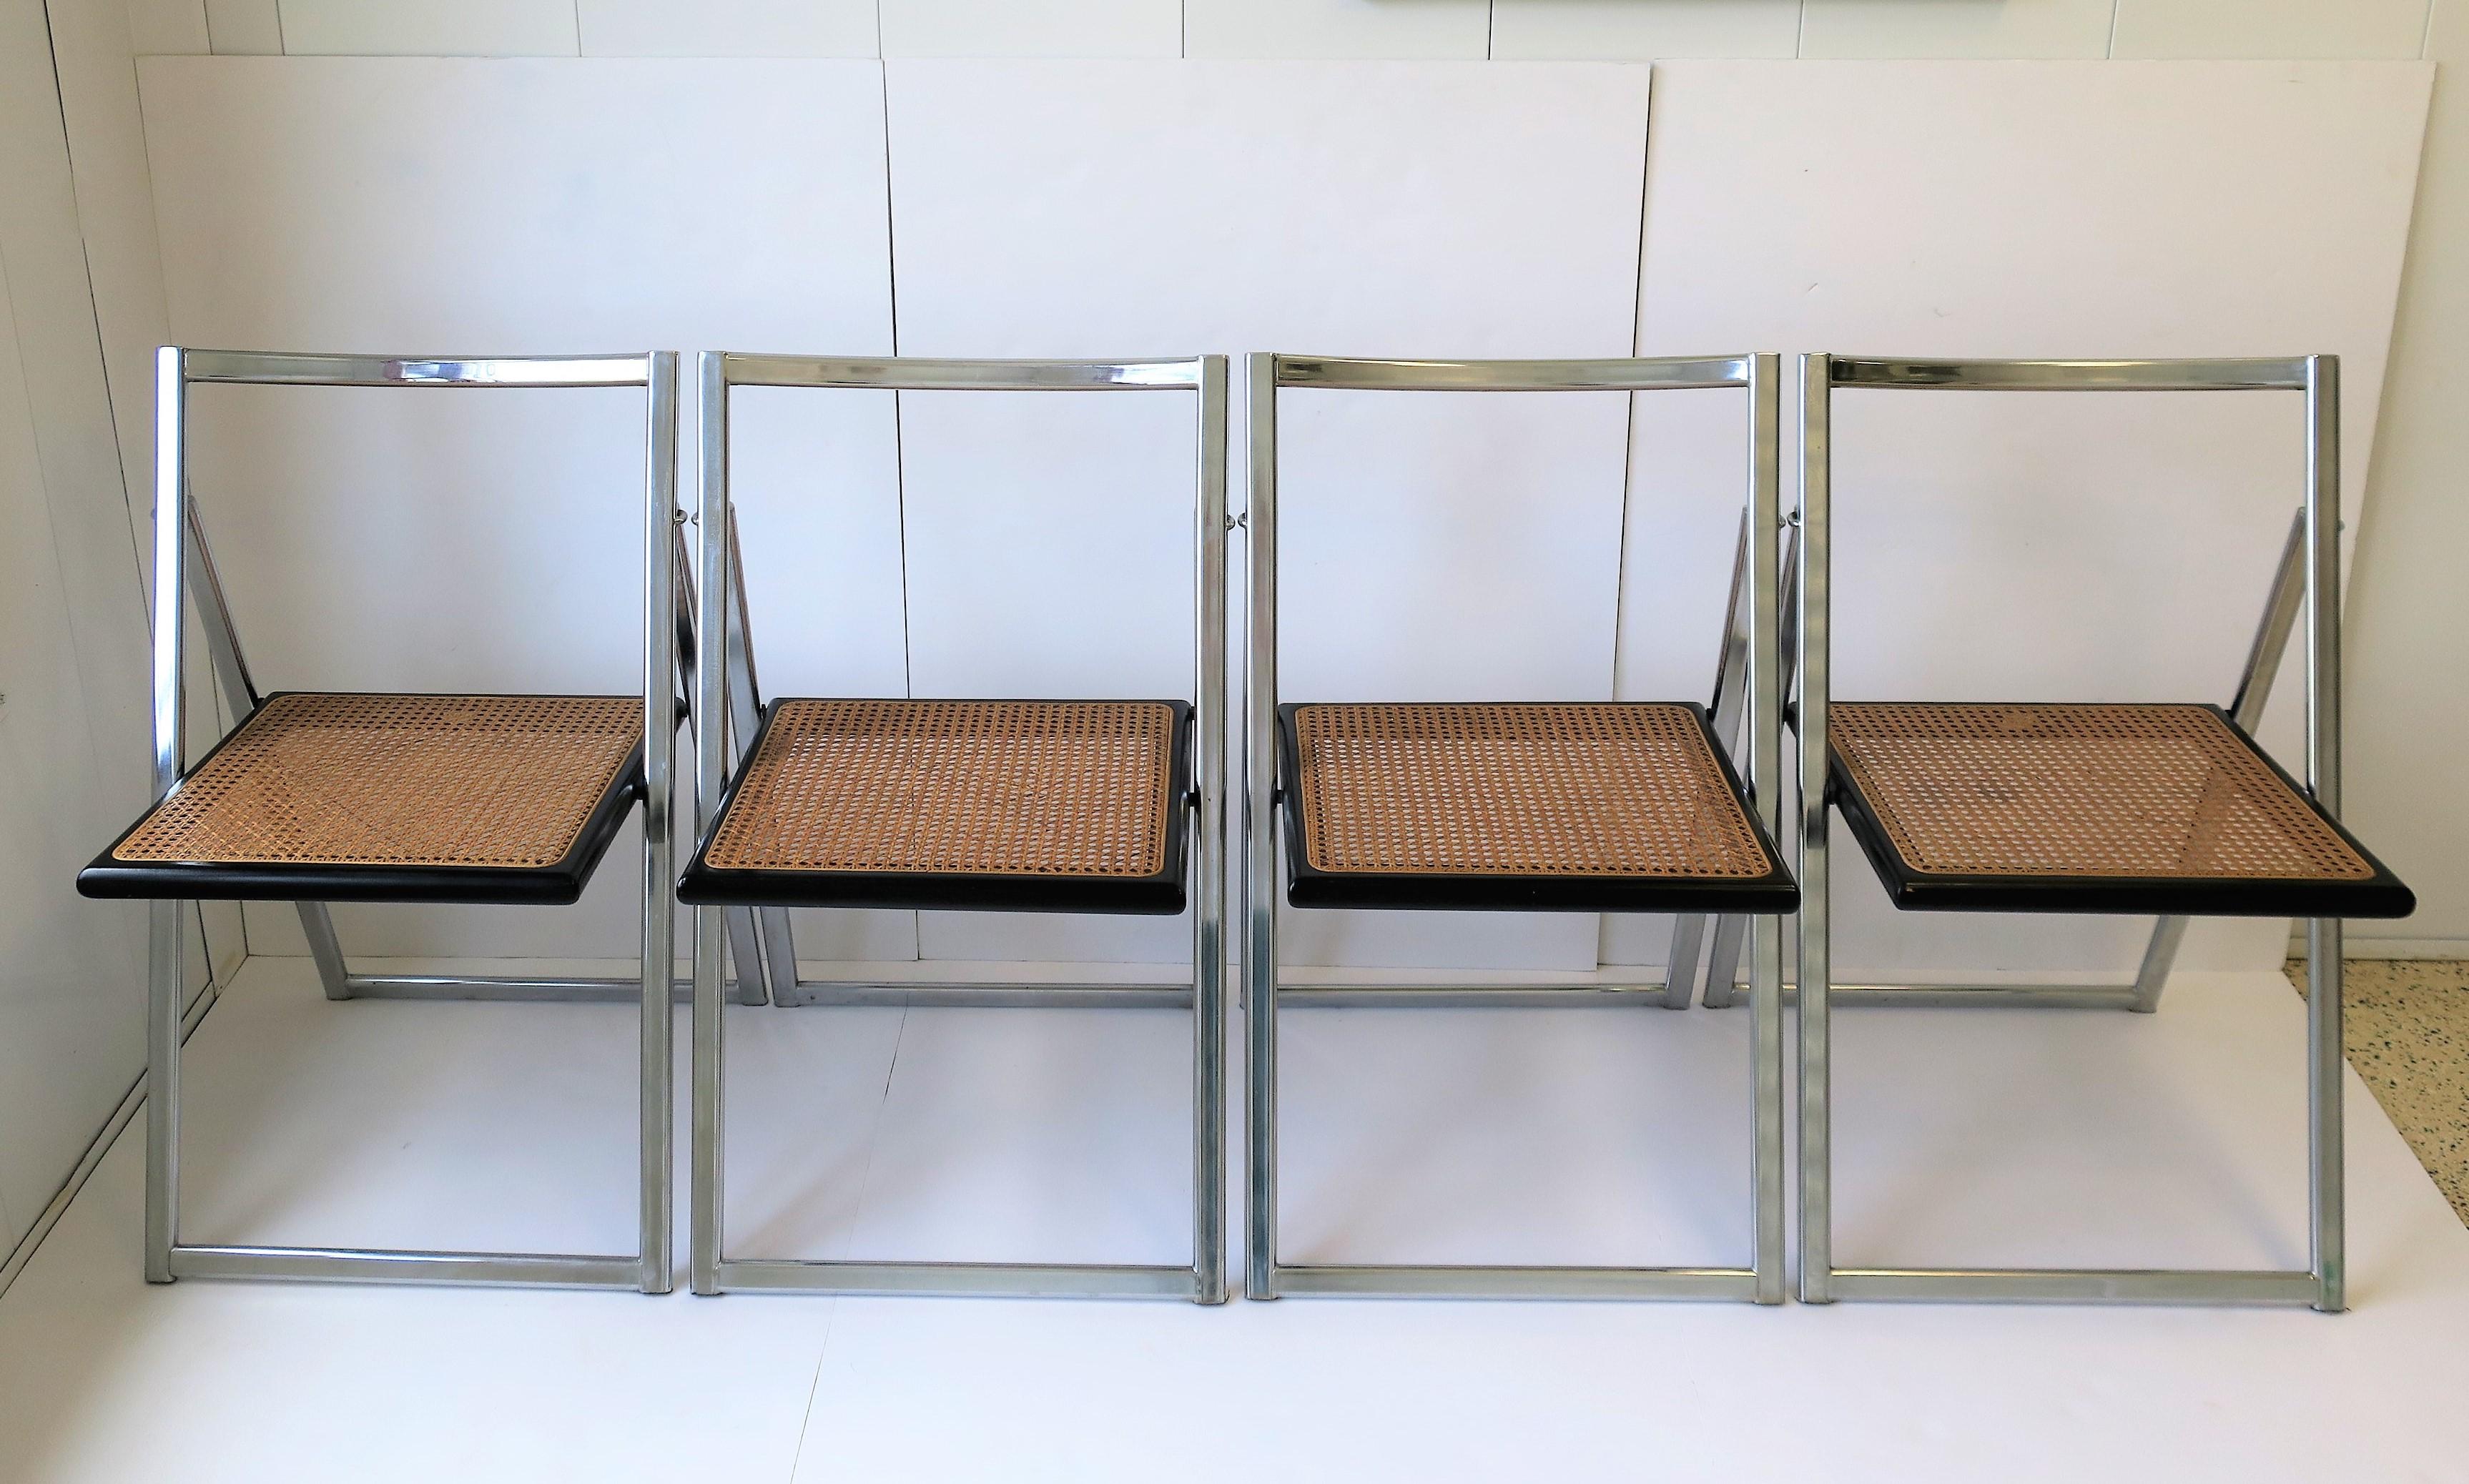 Magnifique ensemble de quatre (4) chaises pliantes en chrome, en bois noir et en canne, d'époque moderne à postmoderne, attribuées à la maison de design italienne Arrben, vers la fin des années 1960 - 1970, Italie. Marqué 